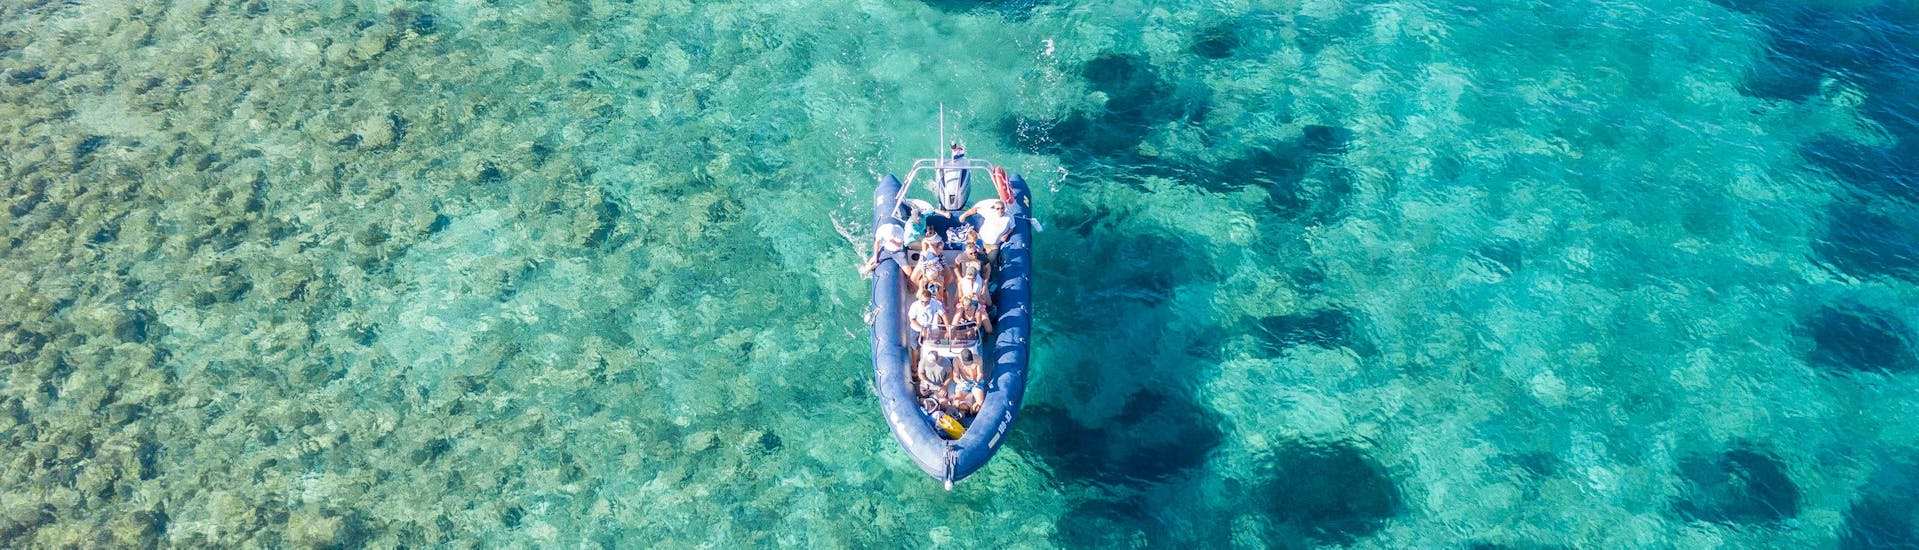 Das Boot von Anima Natura Šibenik im kristallklaren Wasser während einer ihrer Touren.